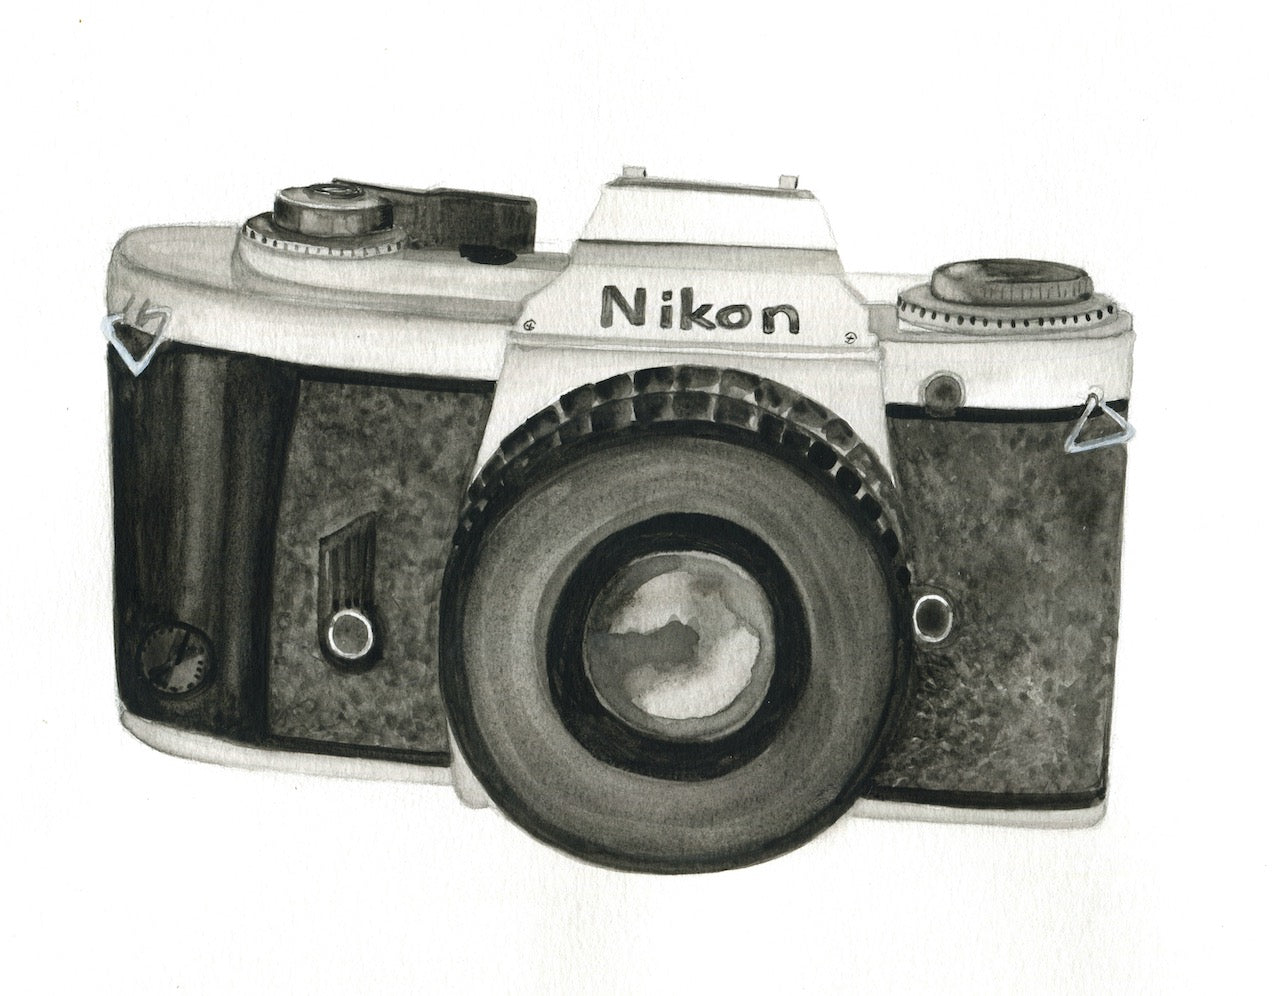 vintage nikon camera sketch